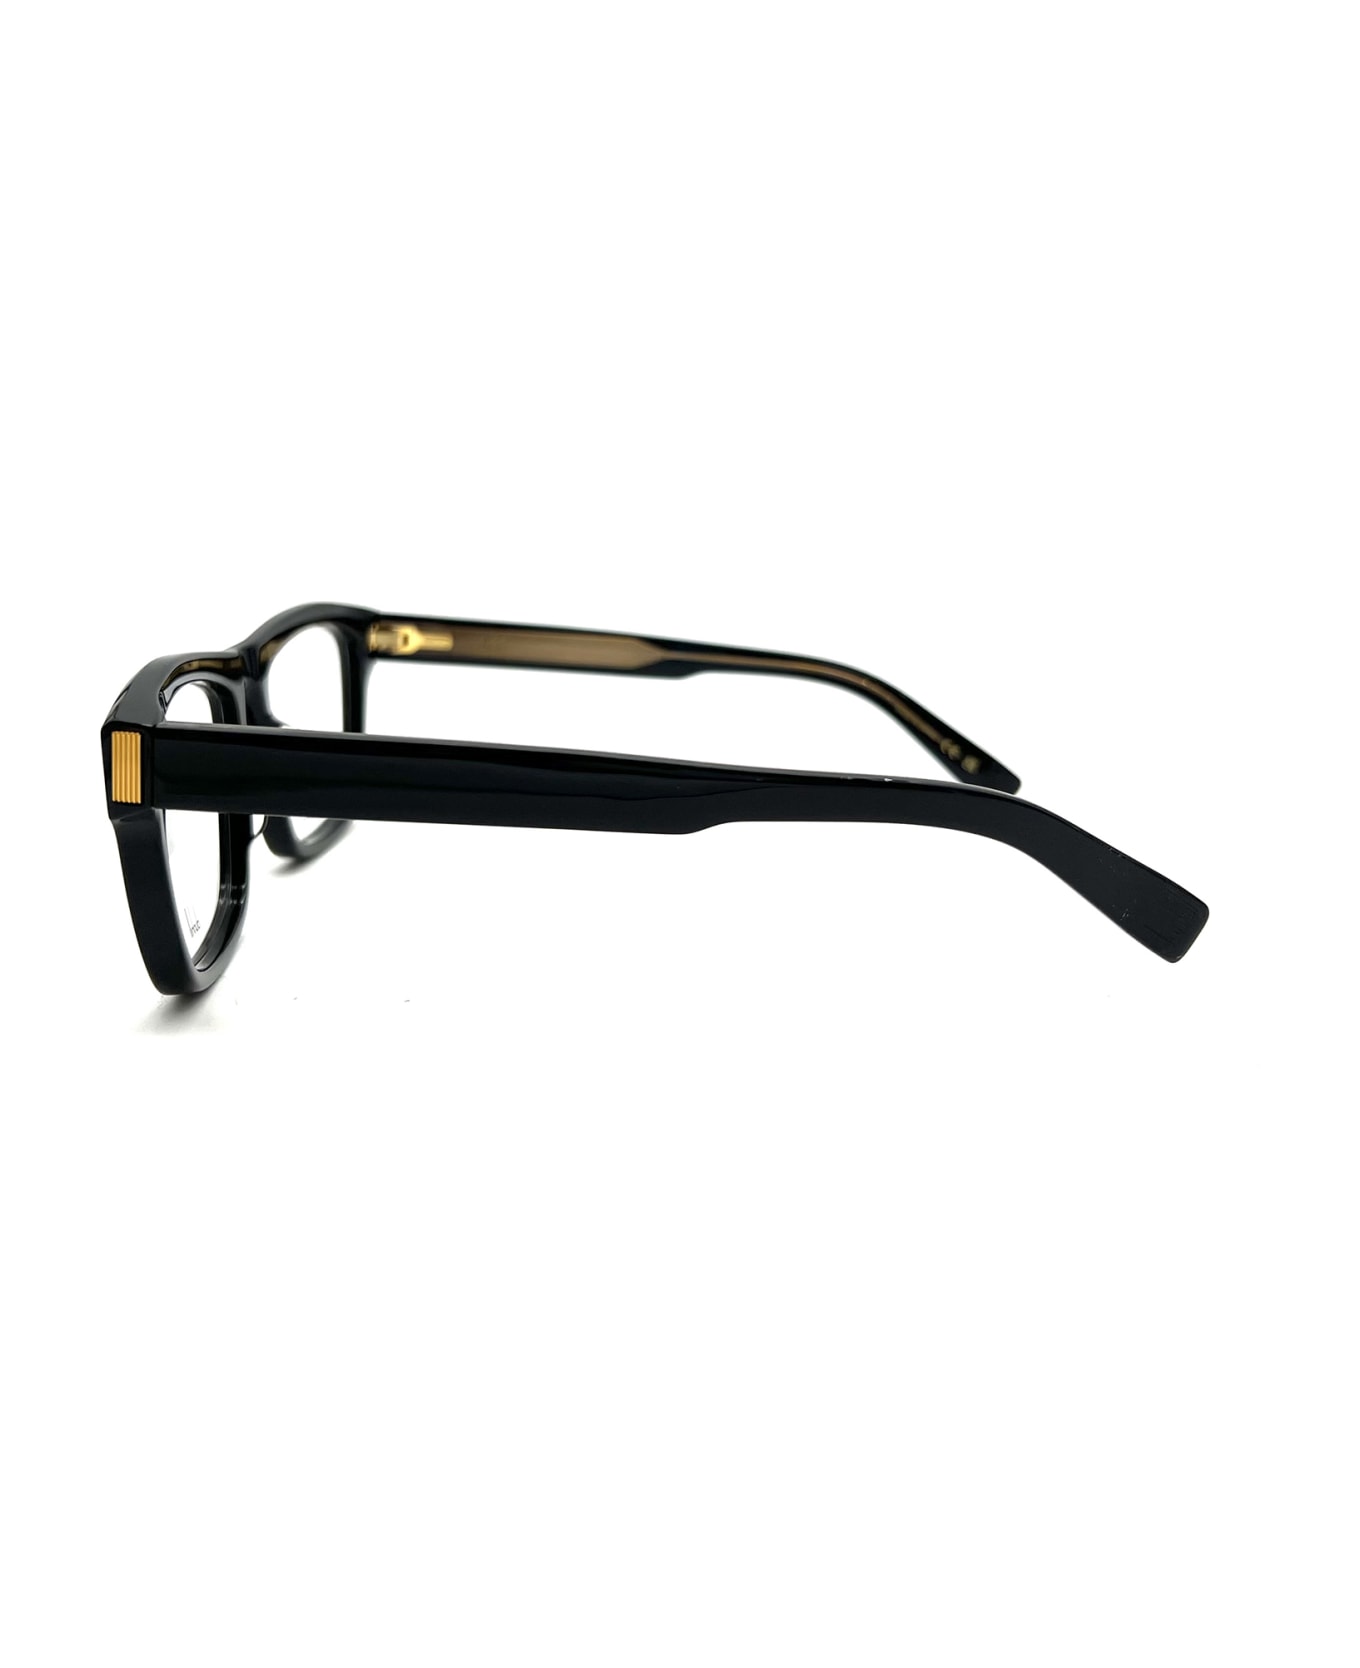 Dunhill DU0030O Eyewear - Black Black Transpare アイウェア